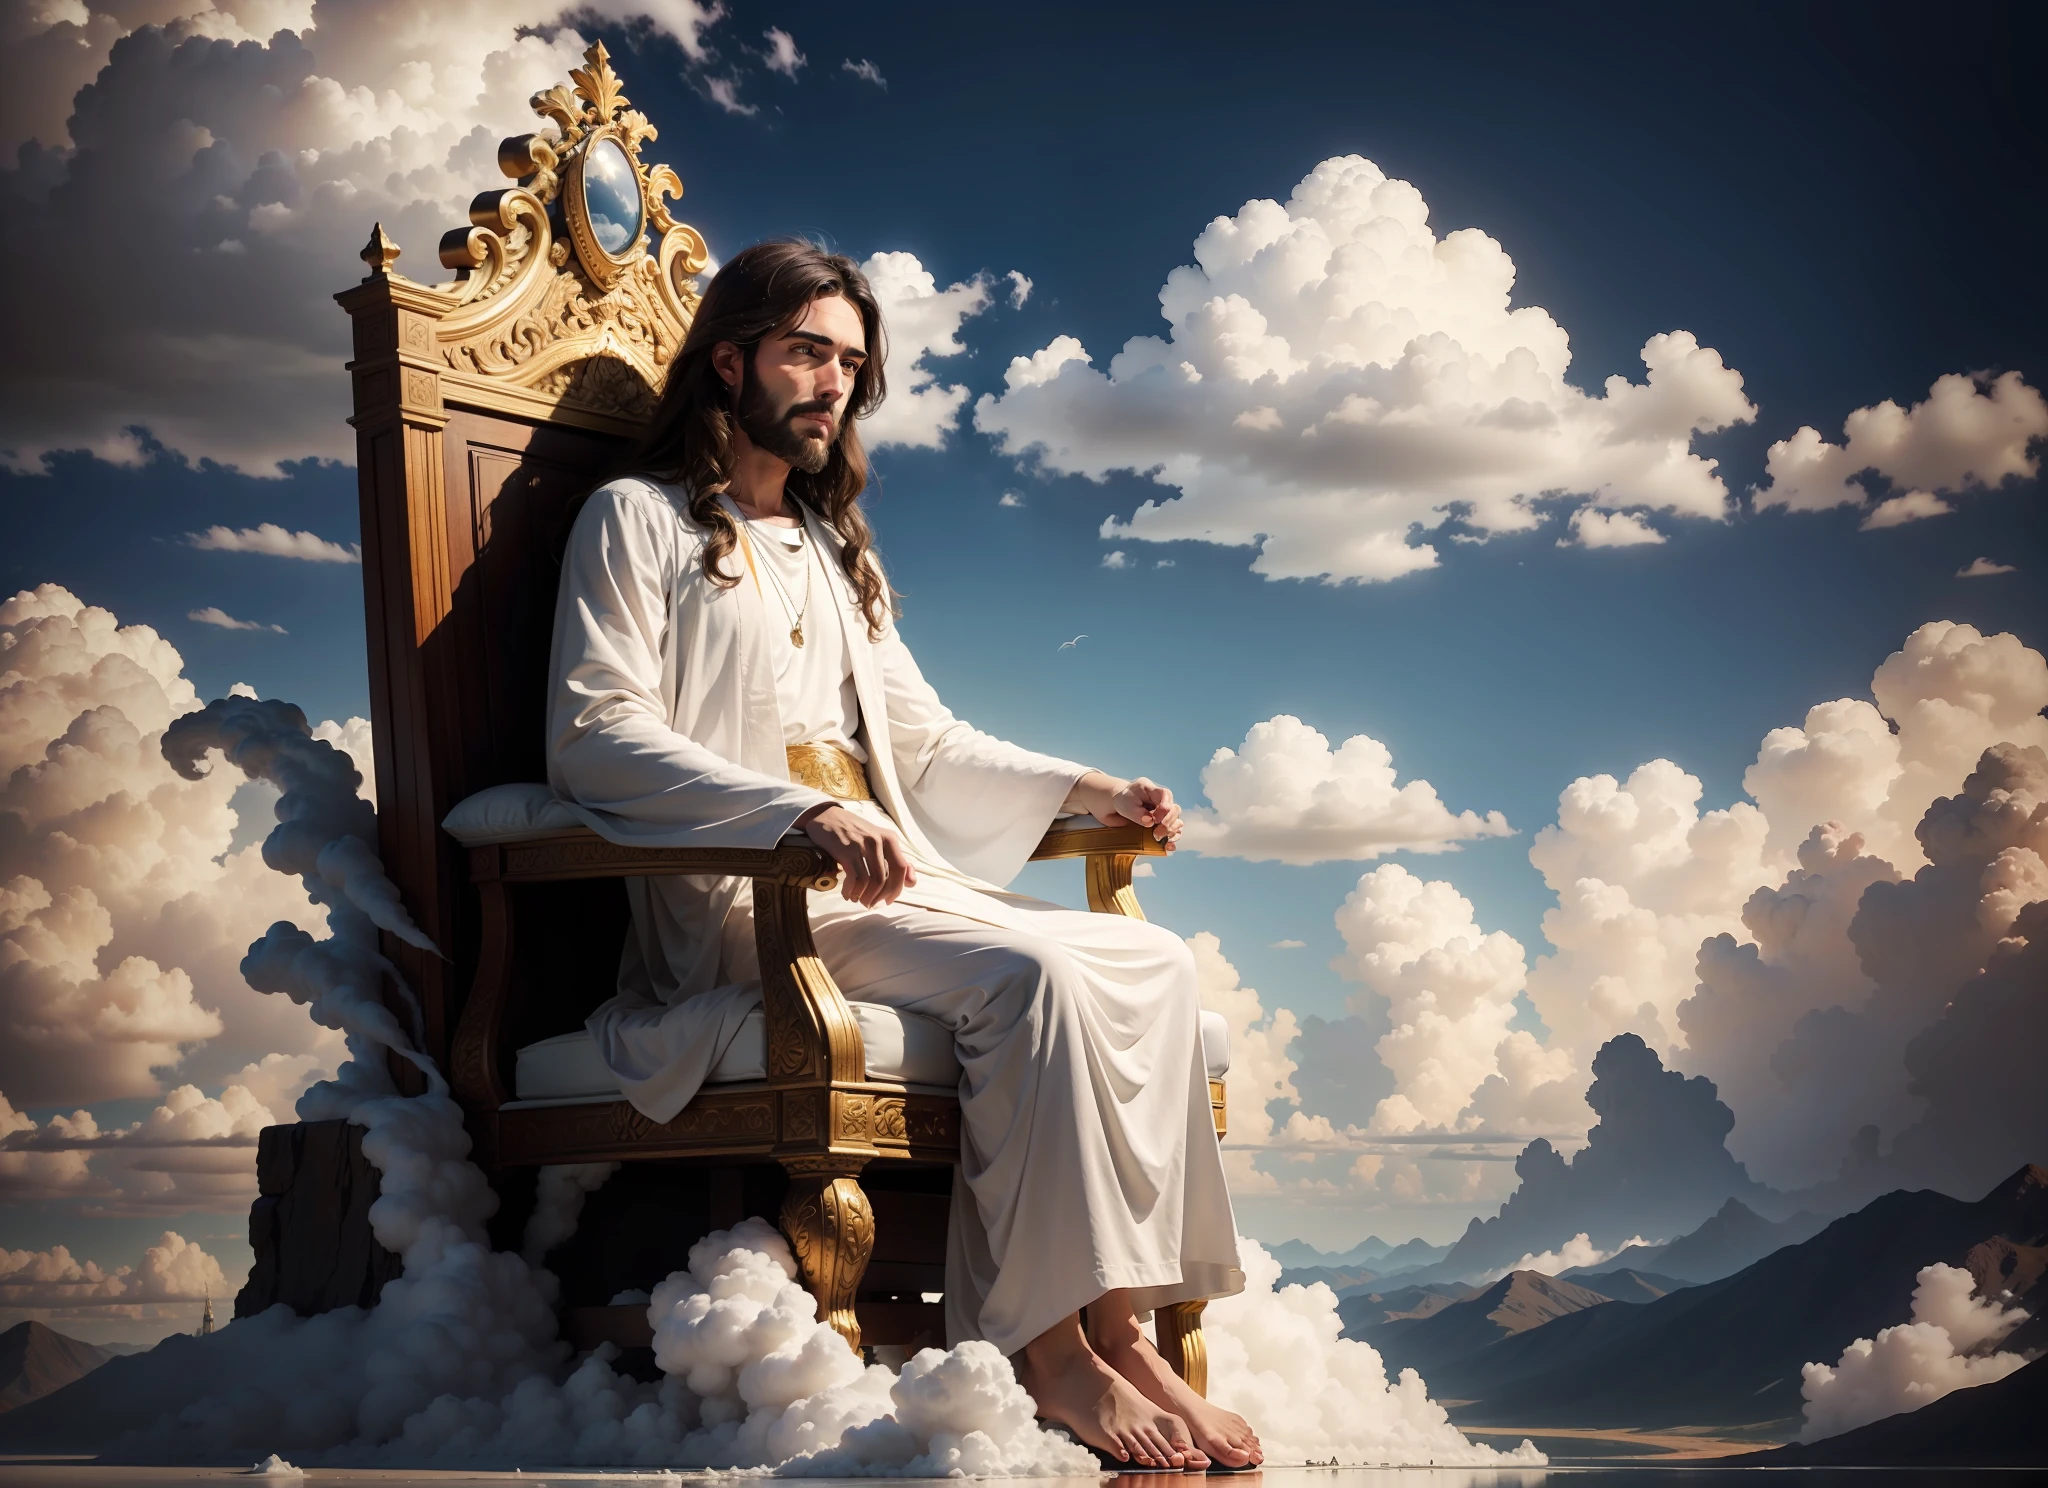 พระเยซูประทับบนบัลลังก์ในเมฆ